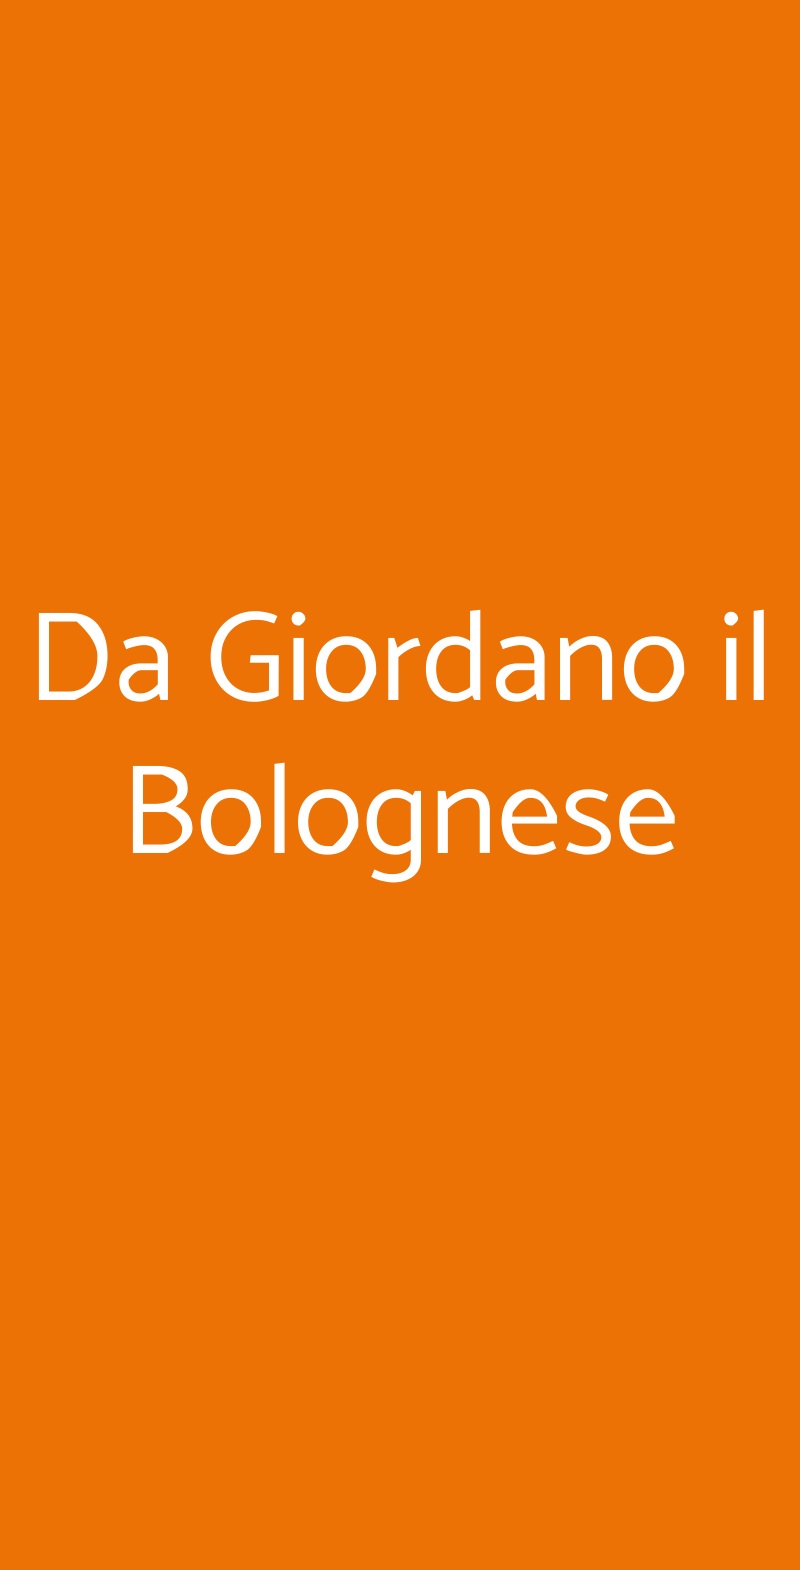 Da Giordano il Bolognese Milano menù 1 pagina